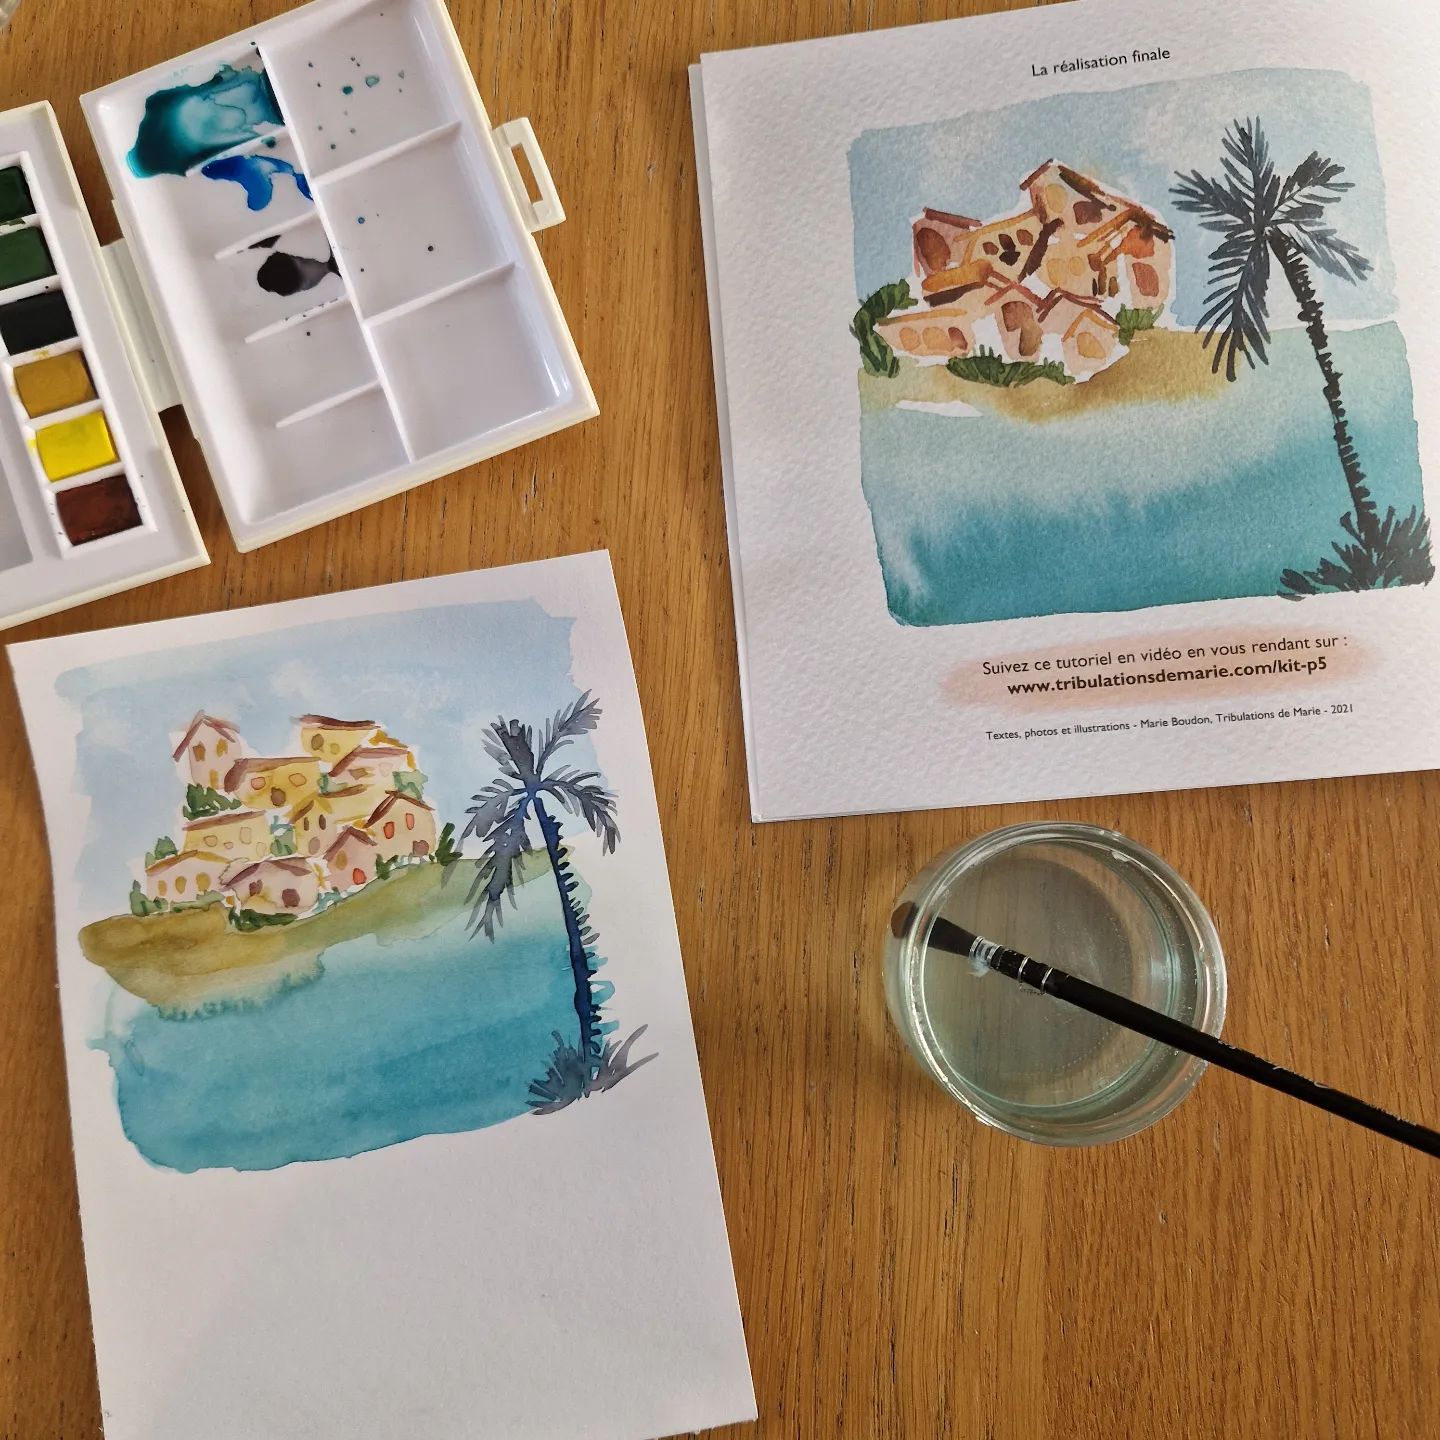 Hier j'ai craqué sur le "kit bord de mer" de @tribulationsdemarie et @sennelier1887 
La palette et magnifique. Le guide est clair et pédagogique.
J'ai encore pas mal de travail 😅 mais ça me donne vraiment envie de m'y mettre plud sérieusement !
Merci Marie Boudon. 

#aquarelle #arttherapy #dessindujour #watercolor #sea #blue